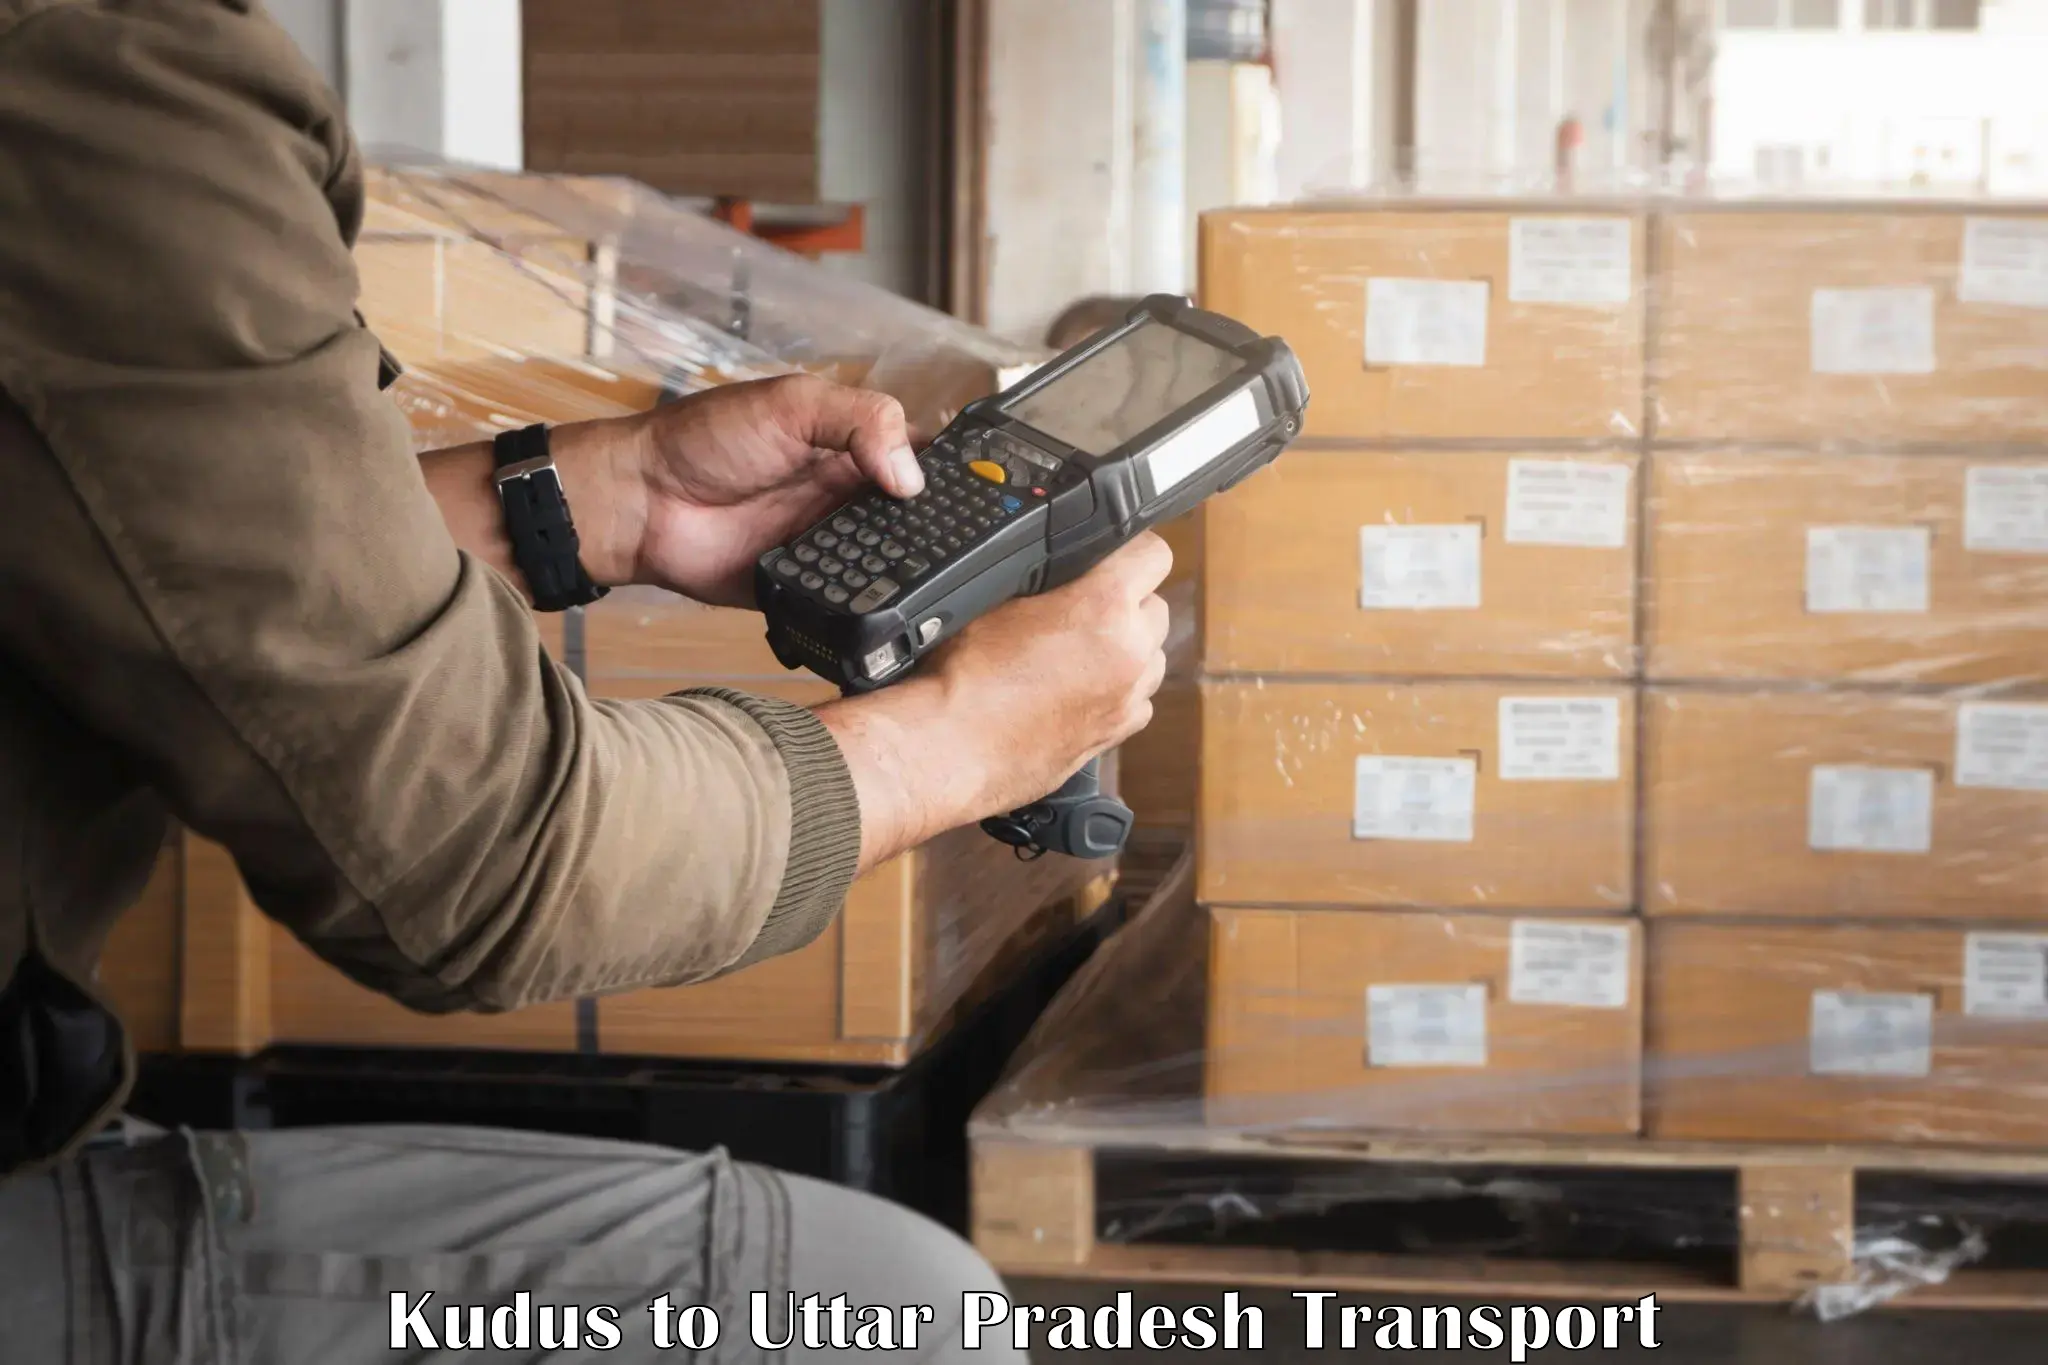 Two wheeler parcel service Kudus to Lakhimpur